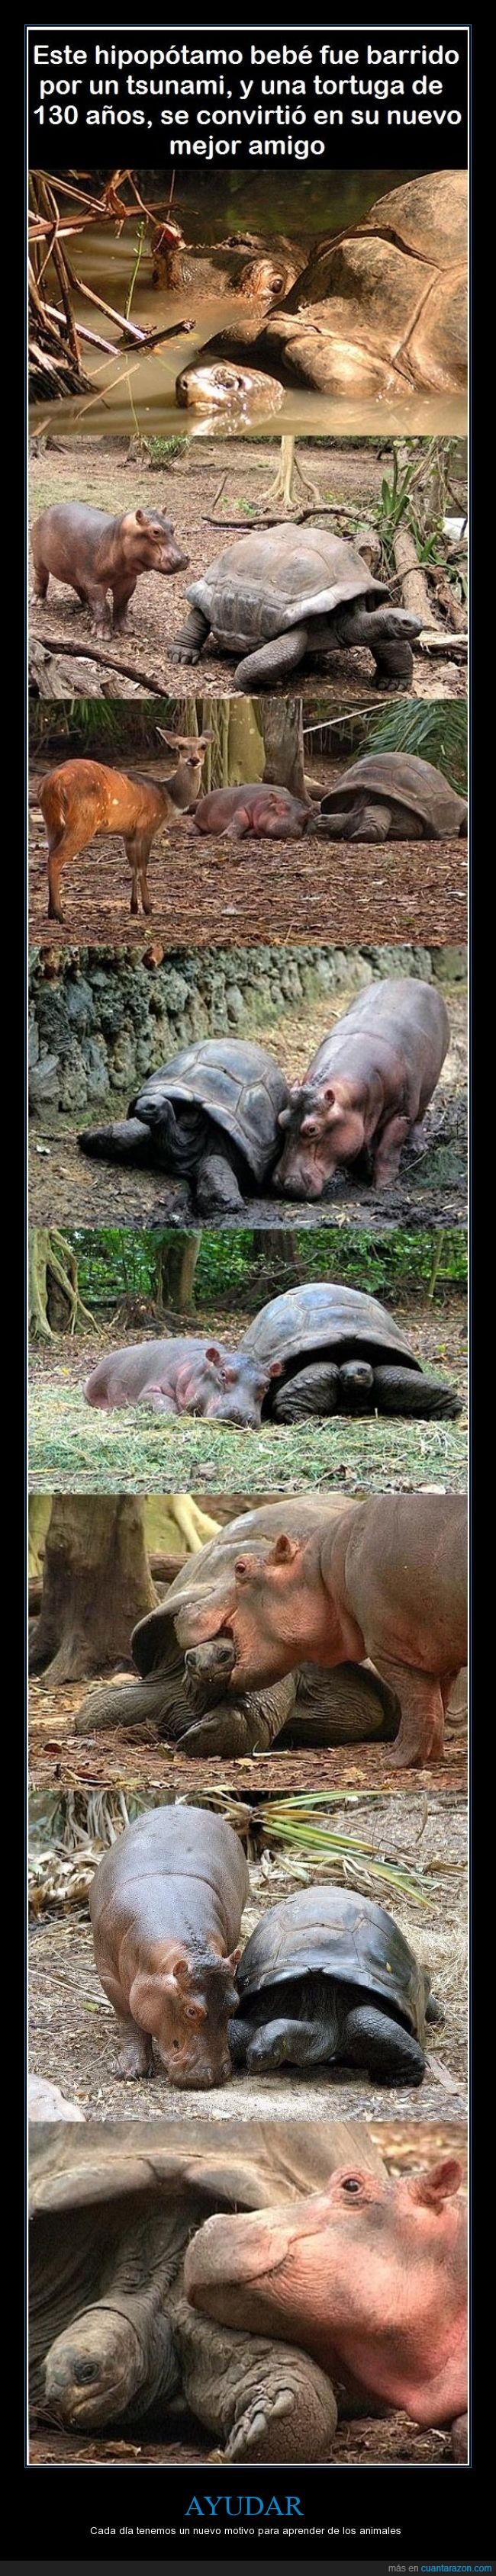 hipopótamo,tortuga,amistad,ayudar,animales,tsunami,salvar,amigos